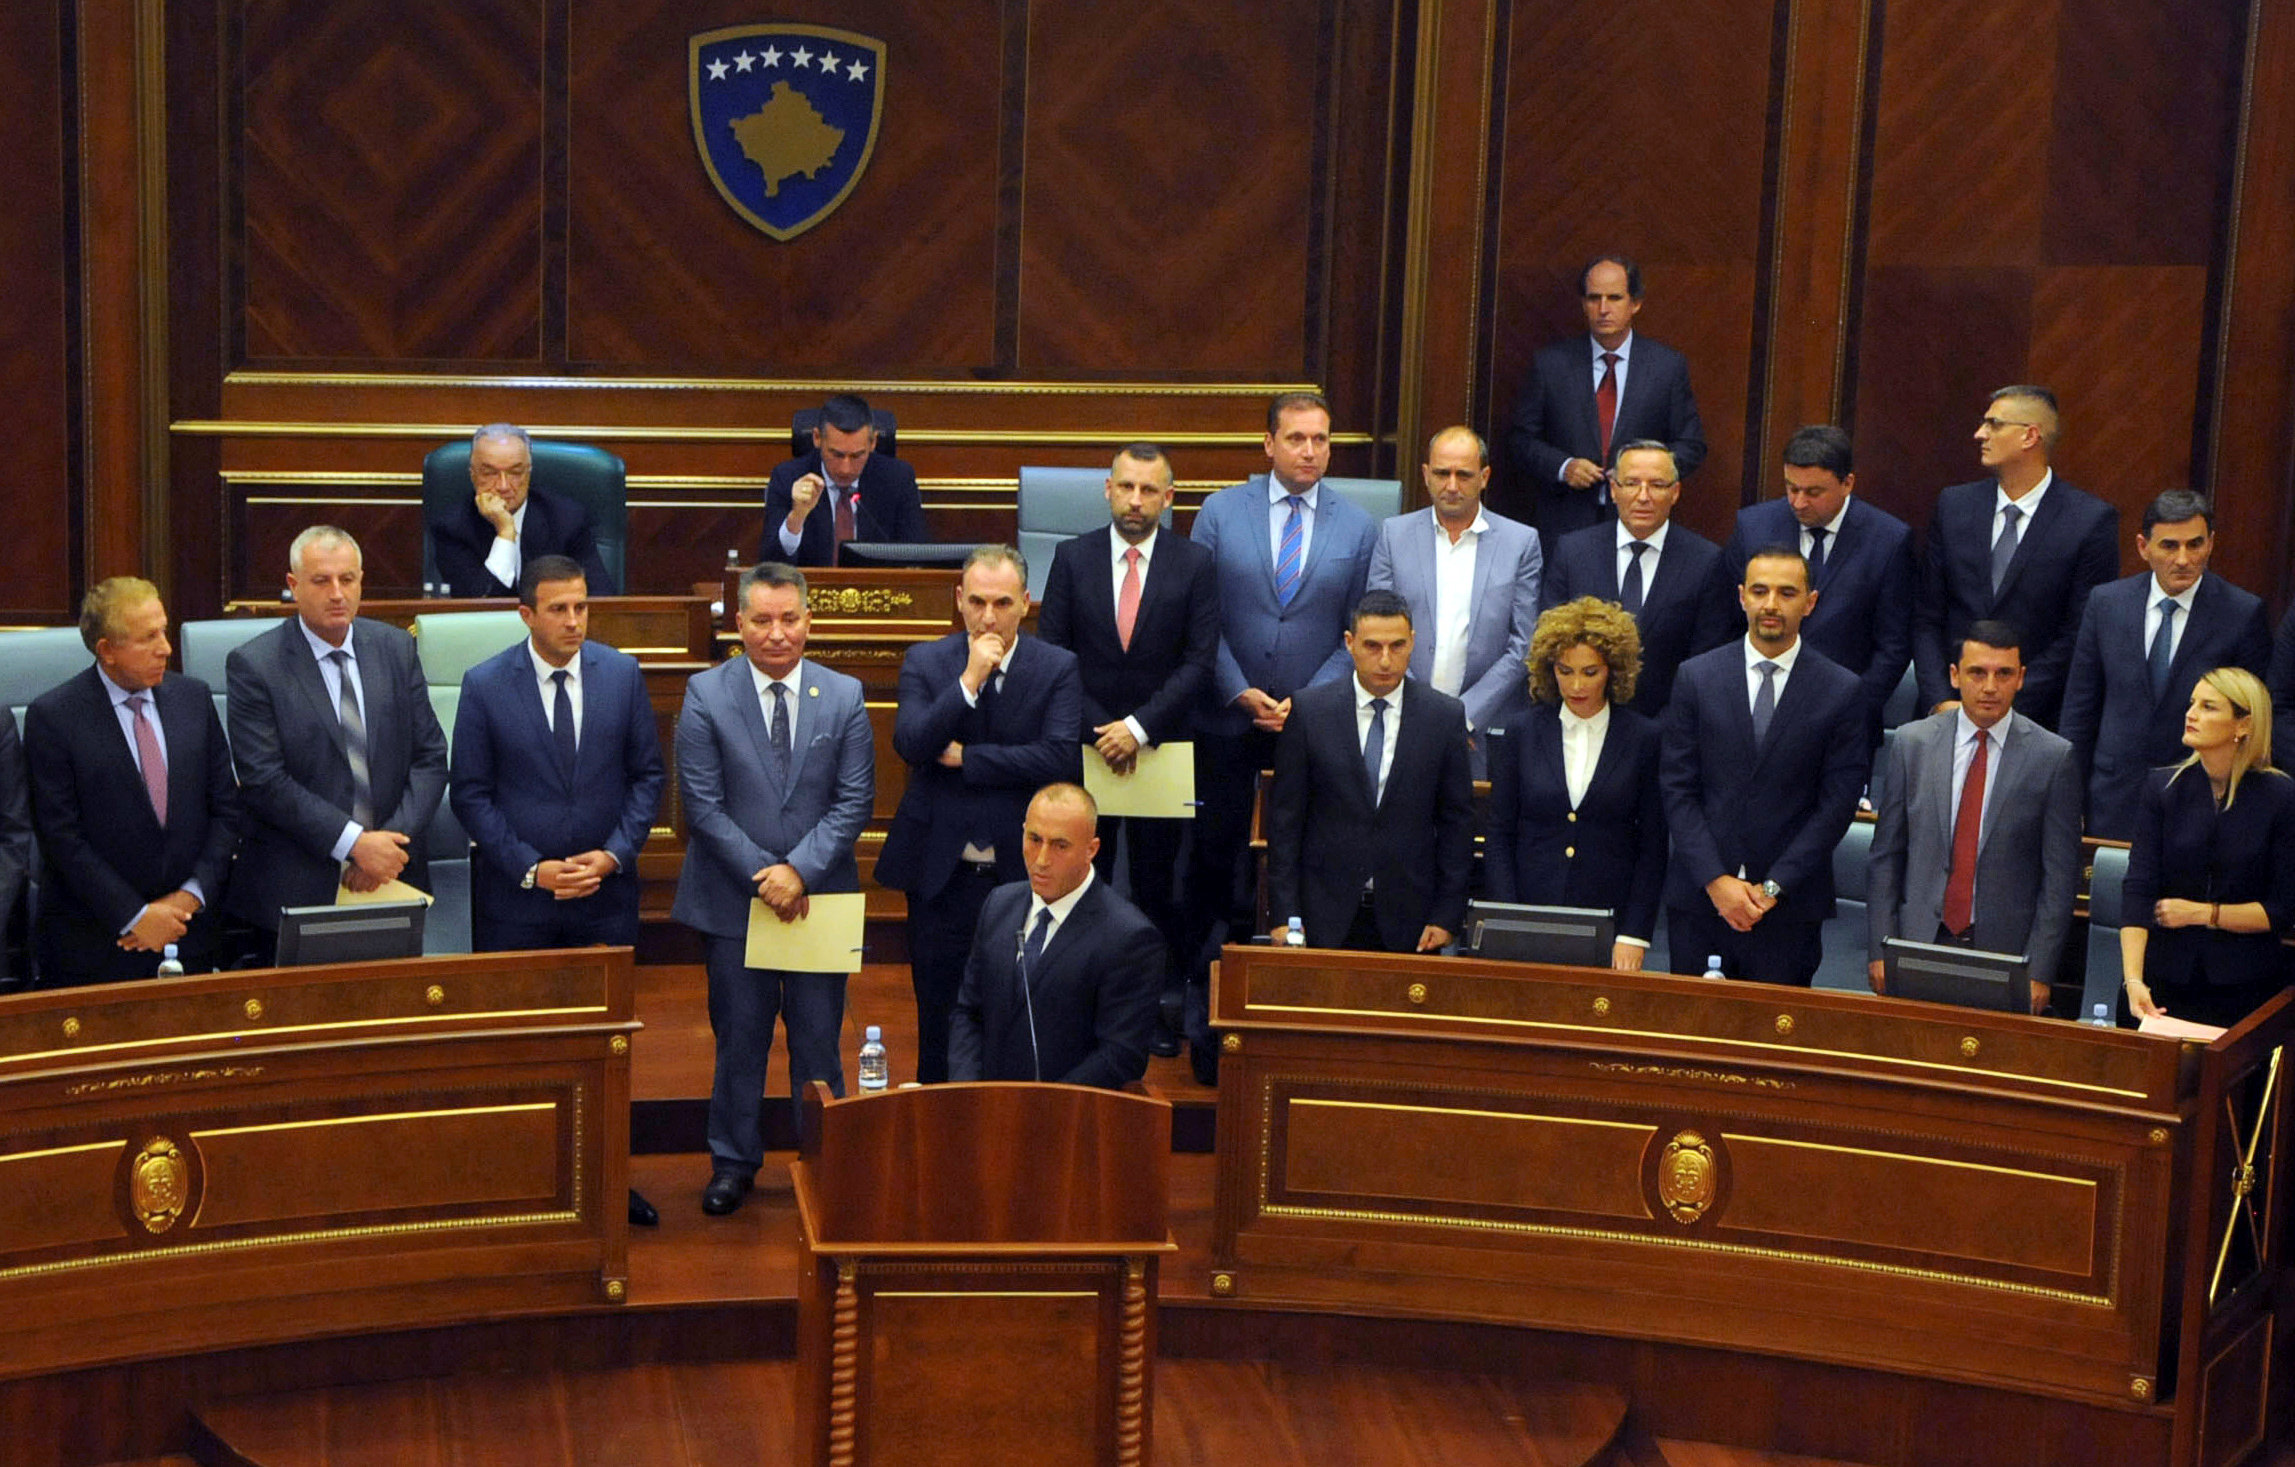 راموش هاراديناج رئيس وزراء كوسوفو المنتخب حديثا وسط أعضاء البرلمان